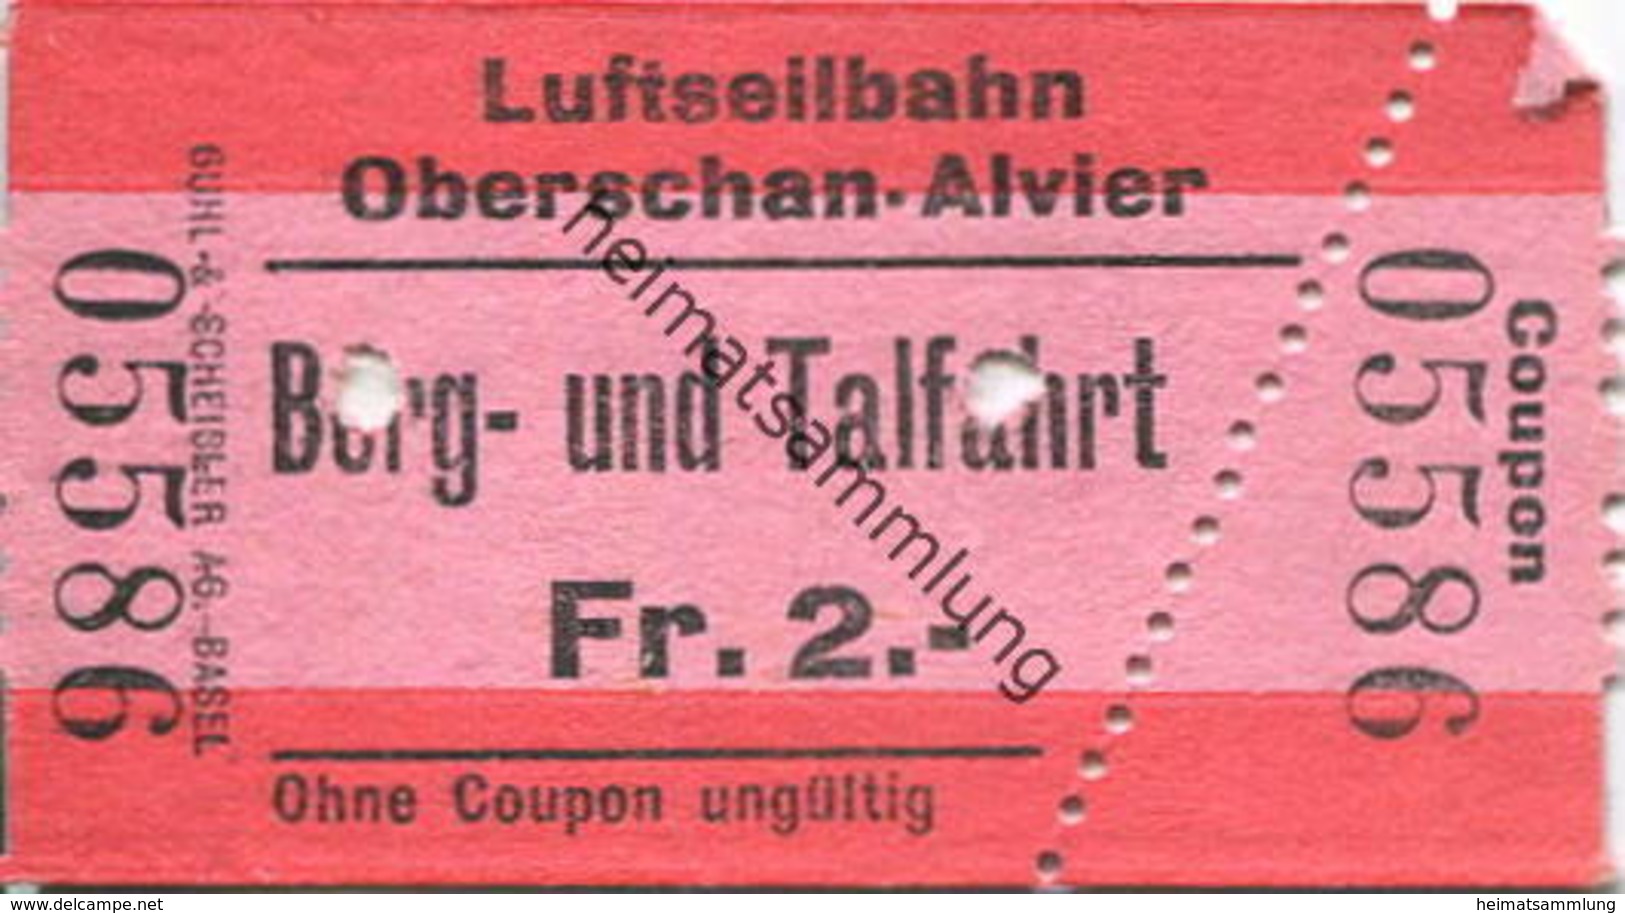 Schweiz - Luftseilbahn Oberschan-Alvier Berg- Und Talfahrt - Fahrschein - Europa